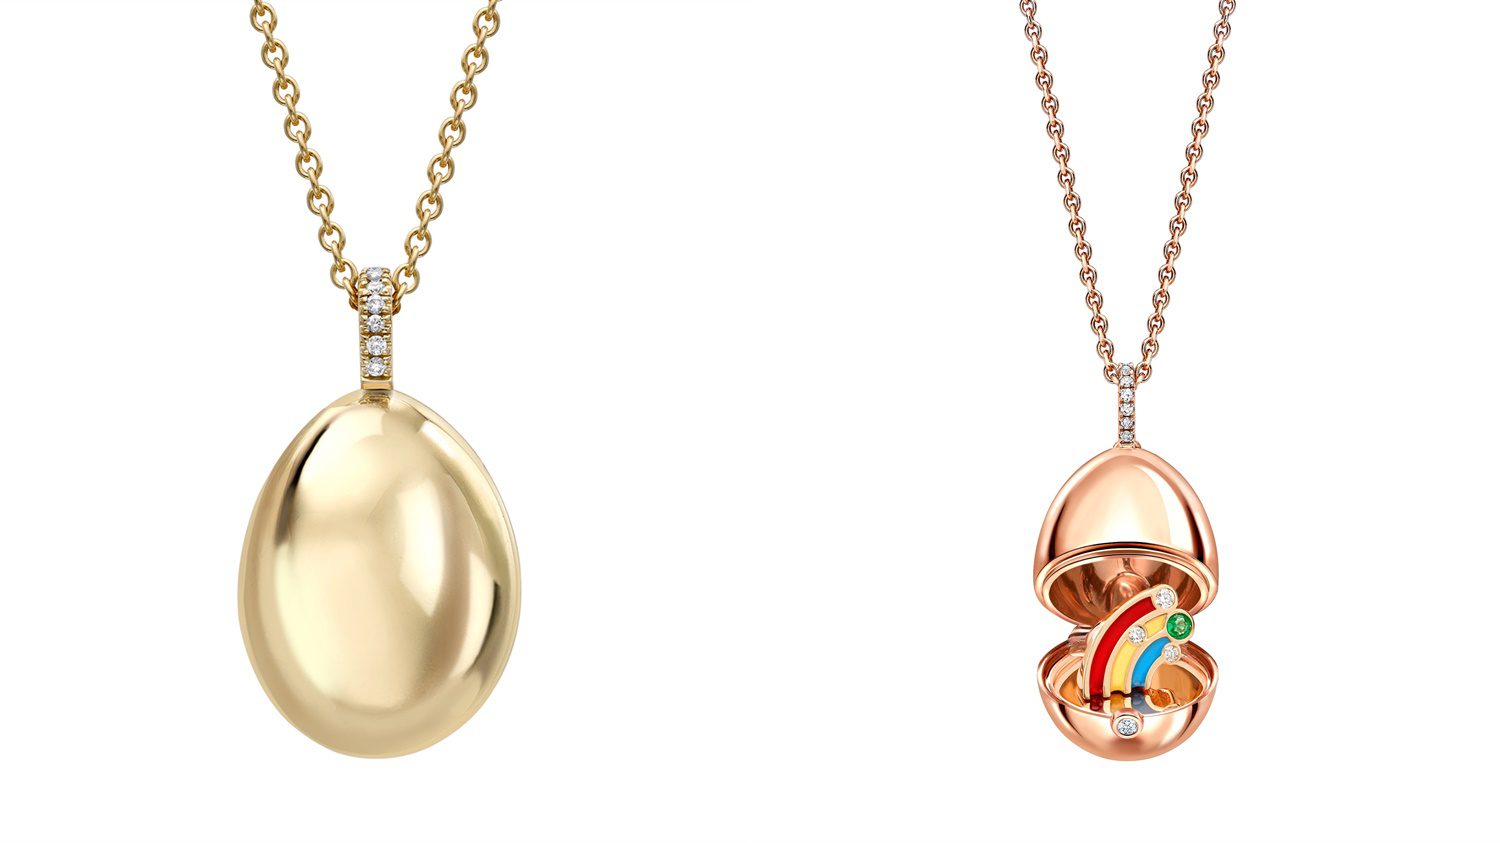 Fabergé pronounces unique collaboration with Yorkshire jeweller